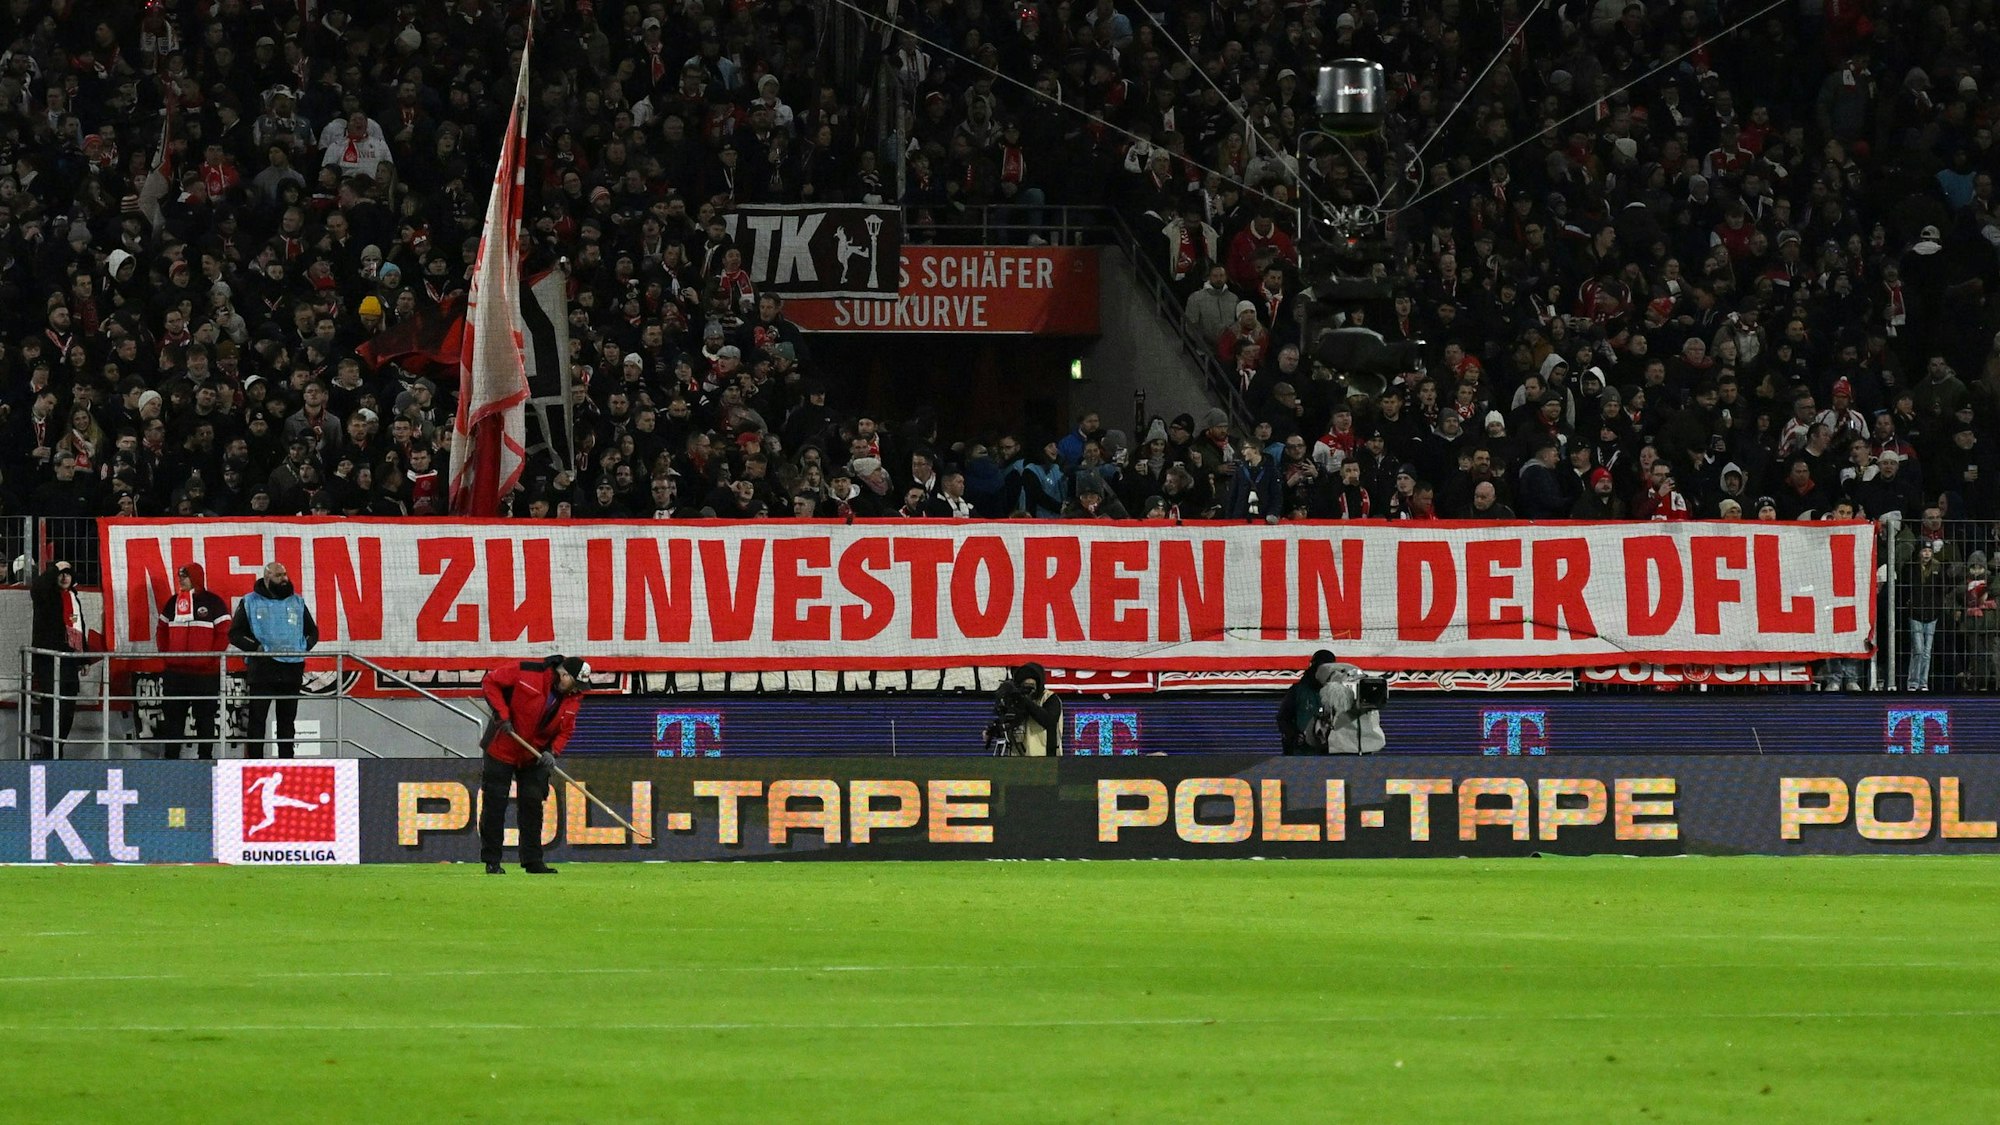 Die Fans des 1. FC Köln waren Teil des erfolgreichen Protests gegen einen Investoreneinstieg bei der DFL.